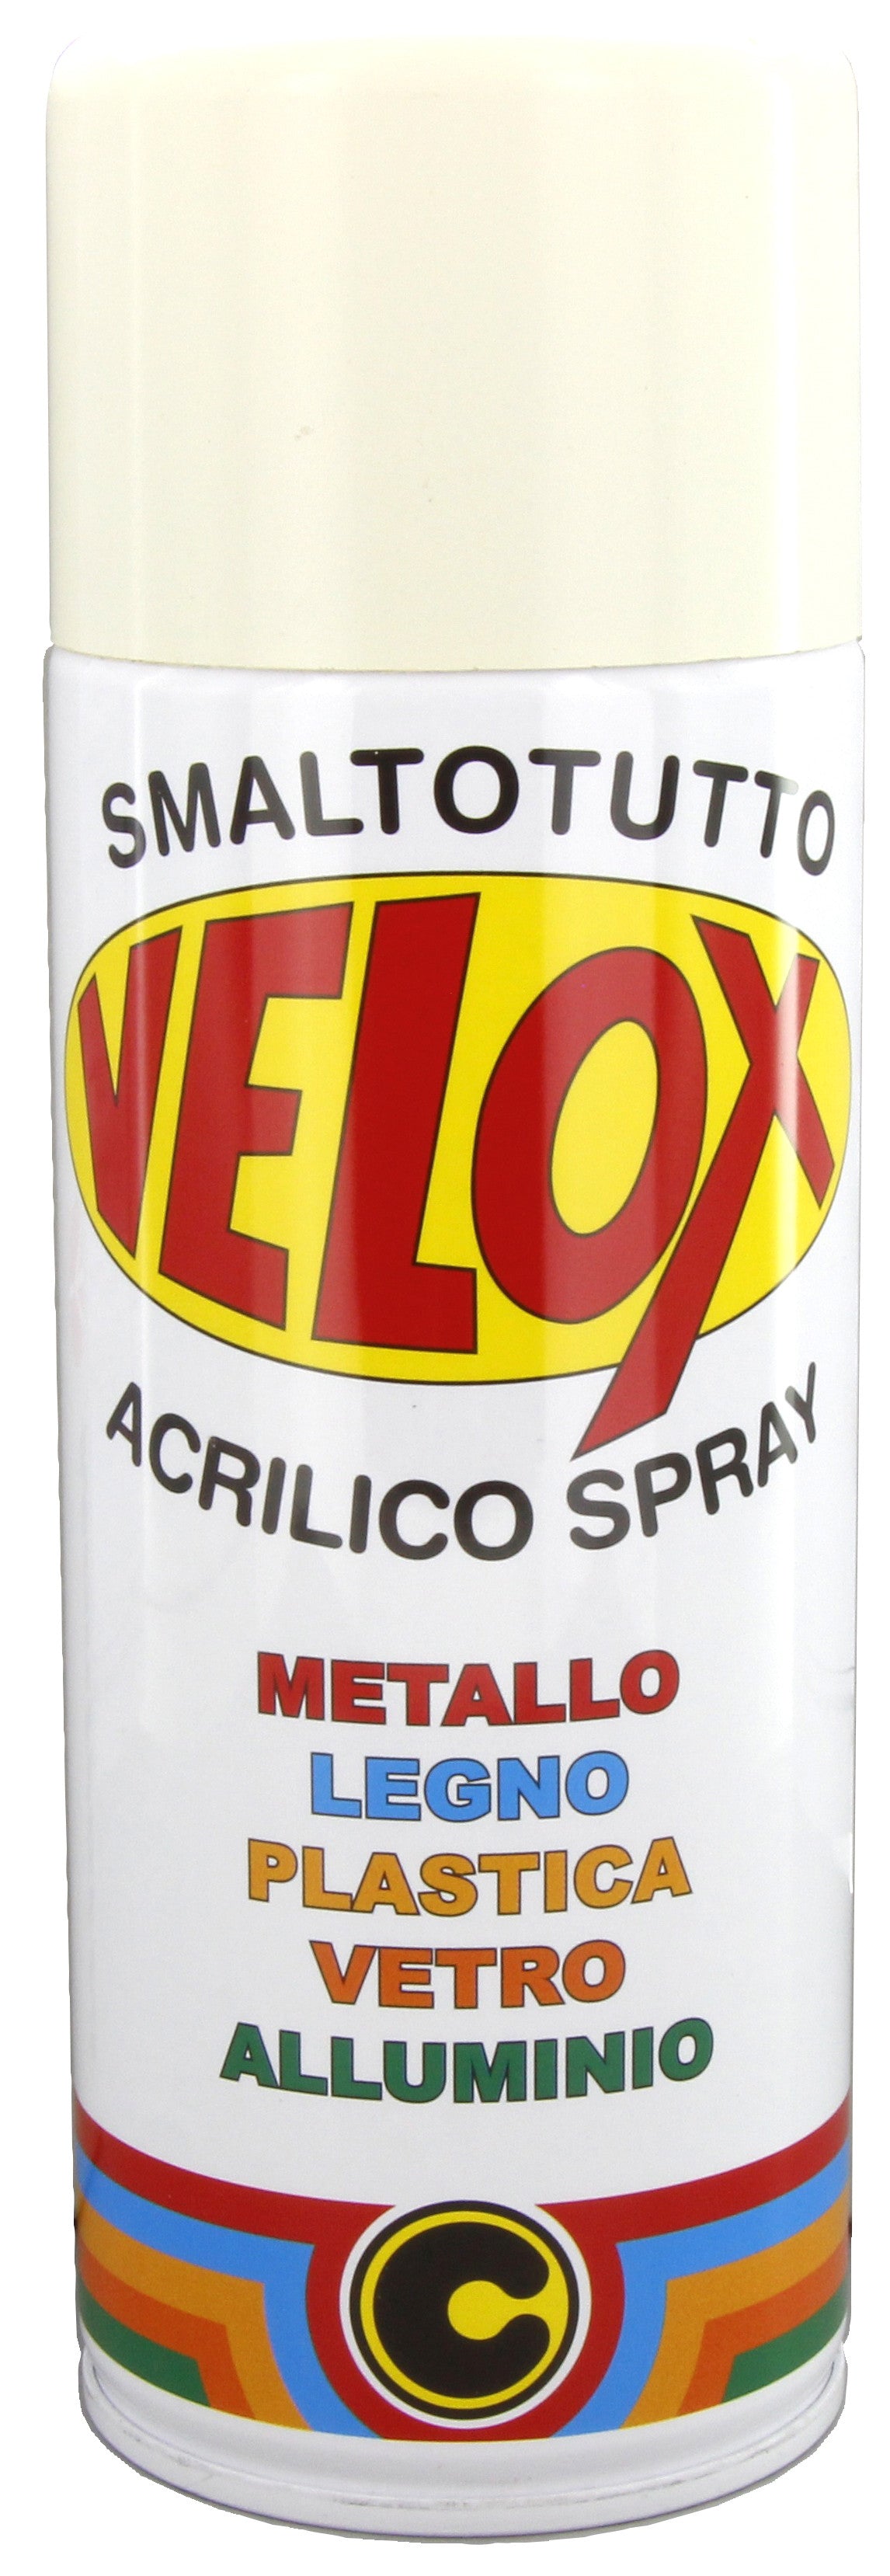 Velox spray acrilico bianco perla ral 1013 ITAL G.E.T.E.